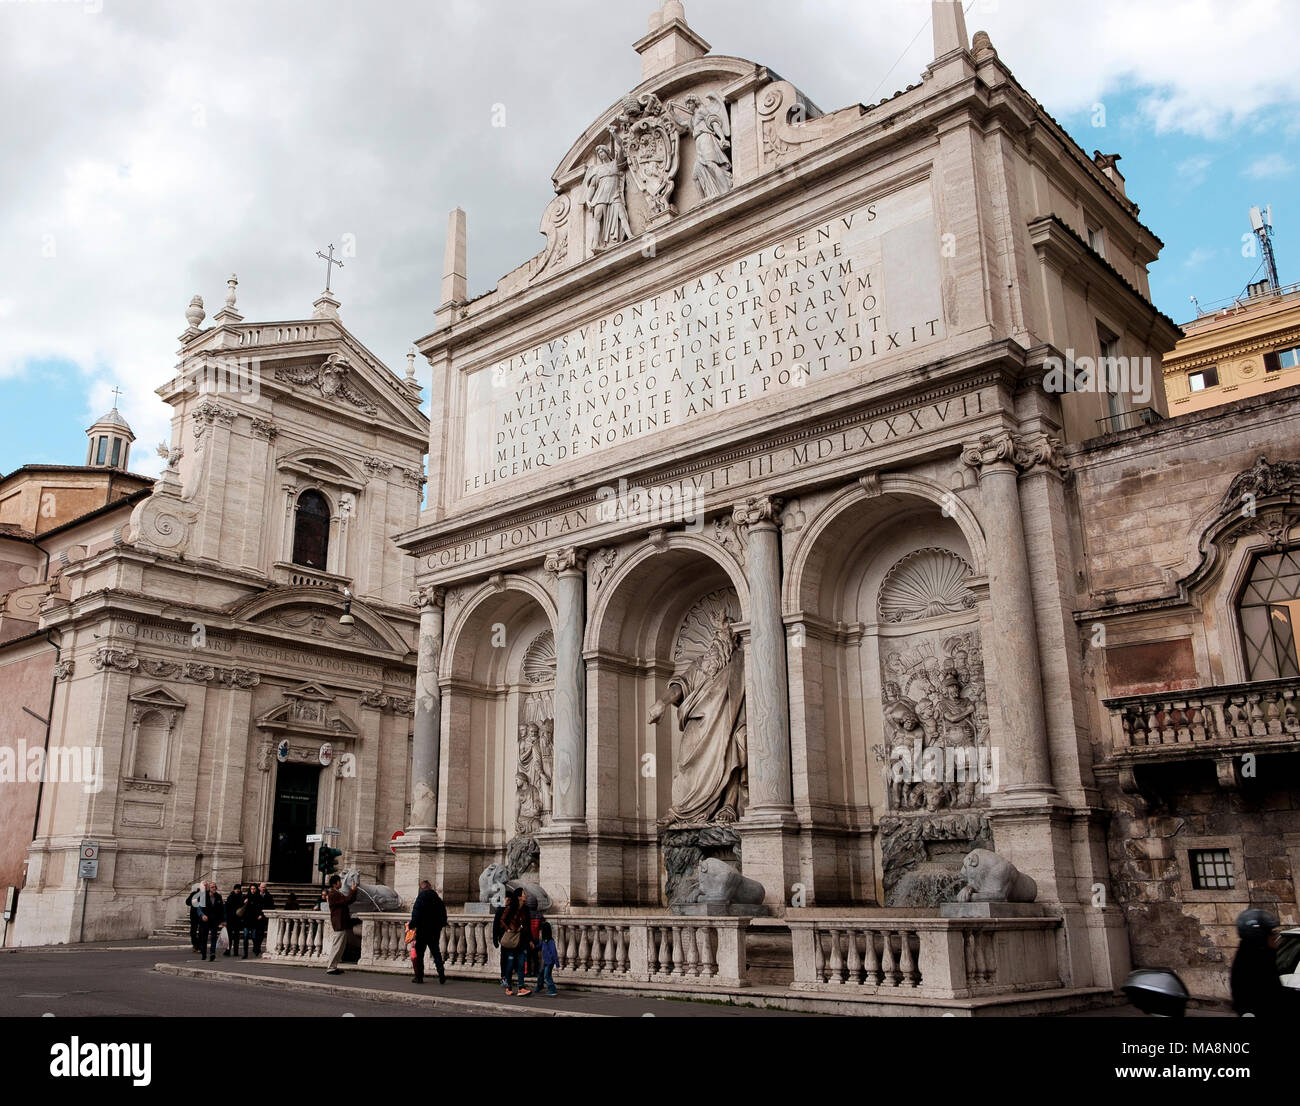 À la gauche de la 17e siècle, l'église de Santa Maria della Vittoria avec Fontana del Mosè dans l'forefround sur la Piazza di San Bernardo, Rome Banque D'Images